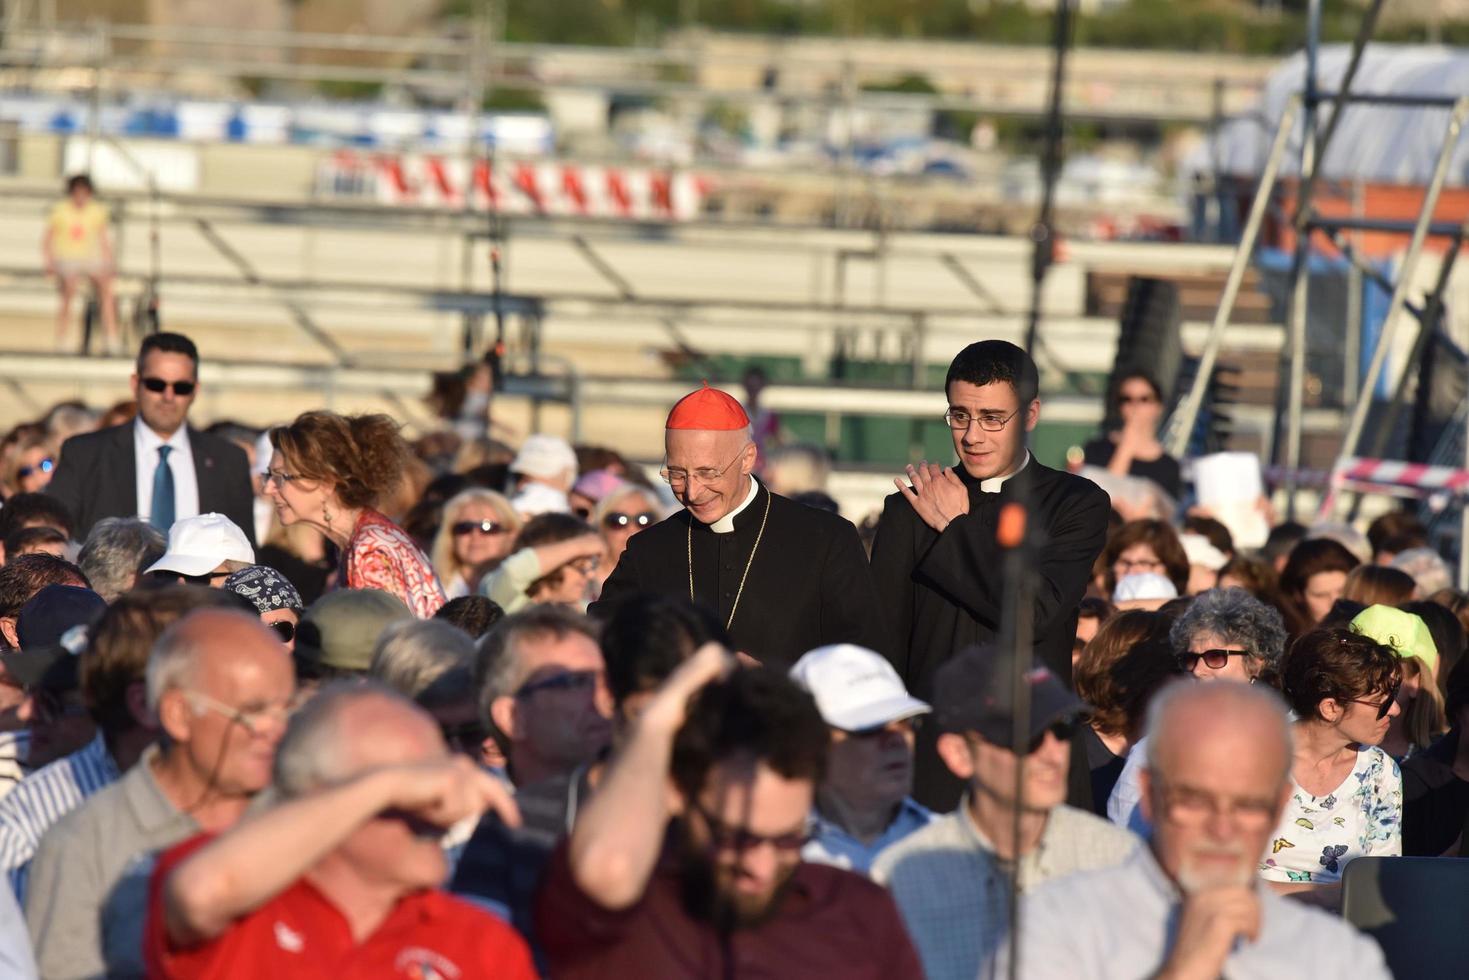 genova, Italia - Maggio 26 2017 - cardinale angelo bagnasco frequentando preparazione per papa Francesco massa nel kennedy posto foto